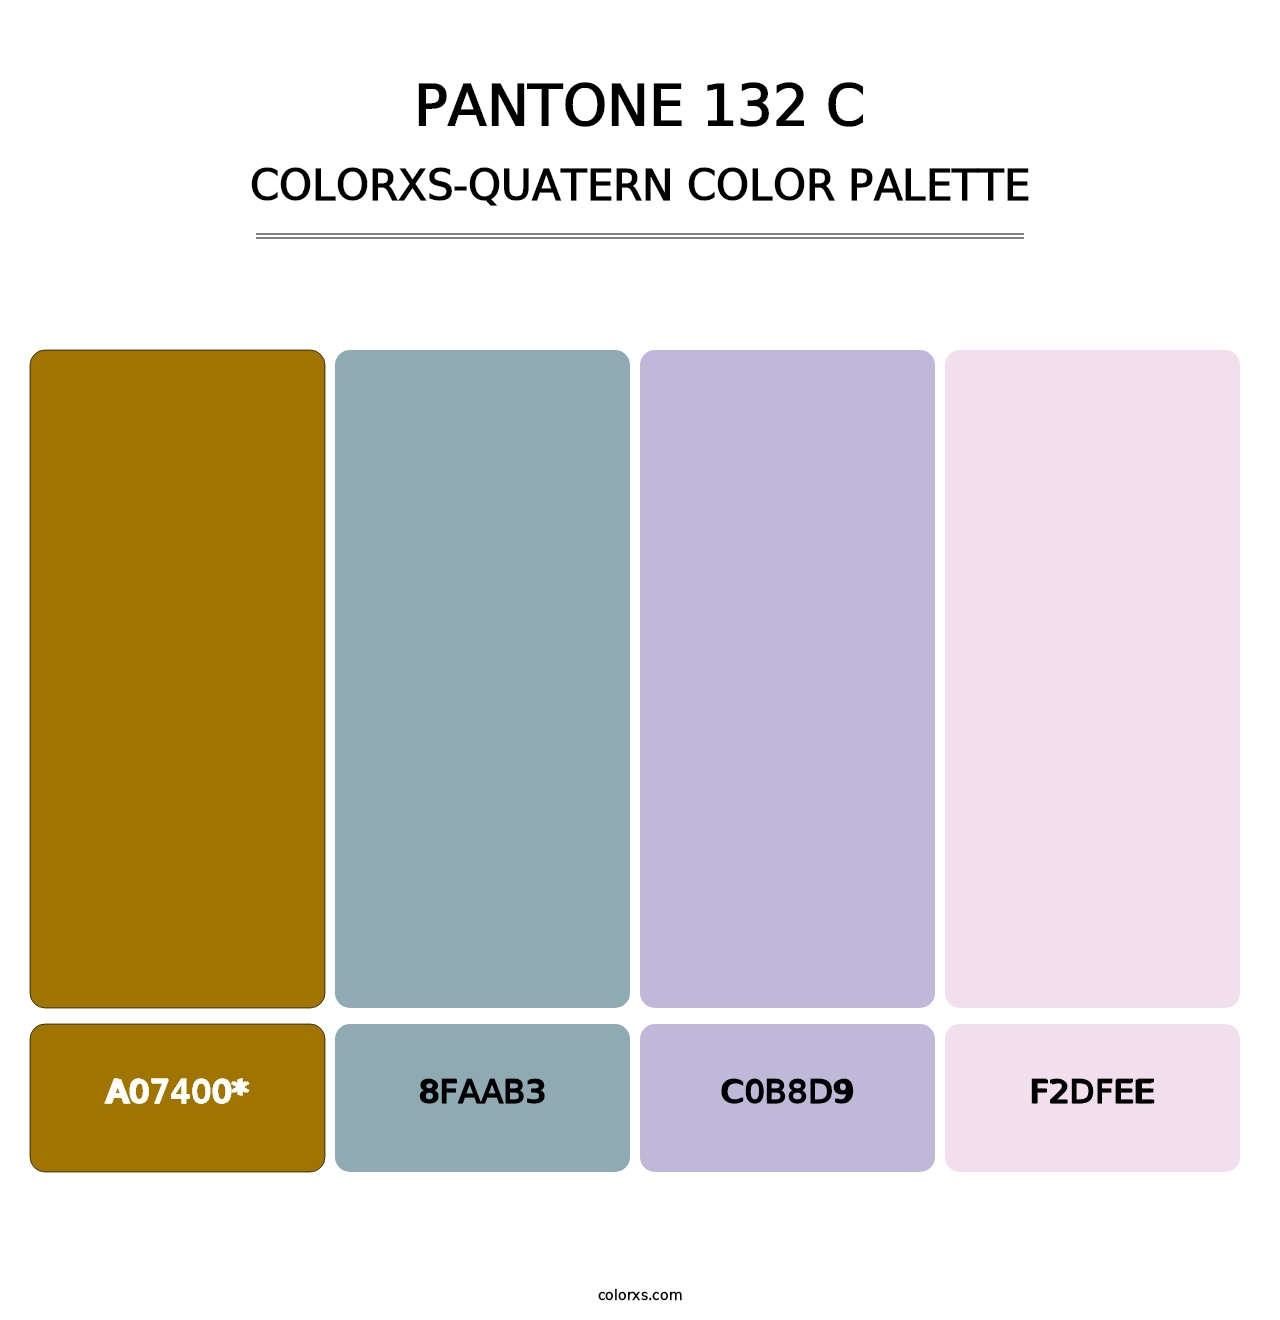 PANTONE 132 C - Colorxs Quatern Palette